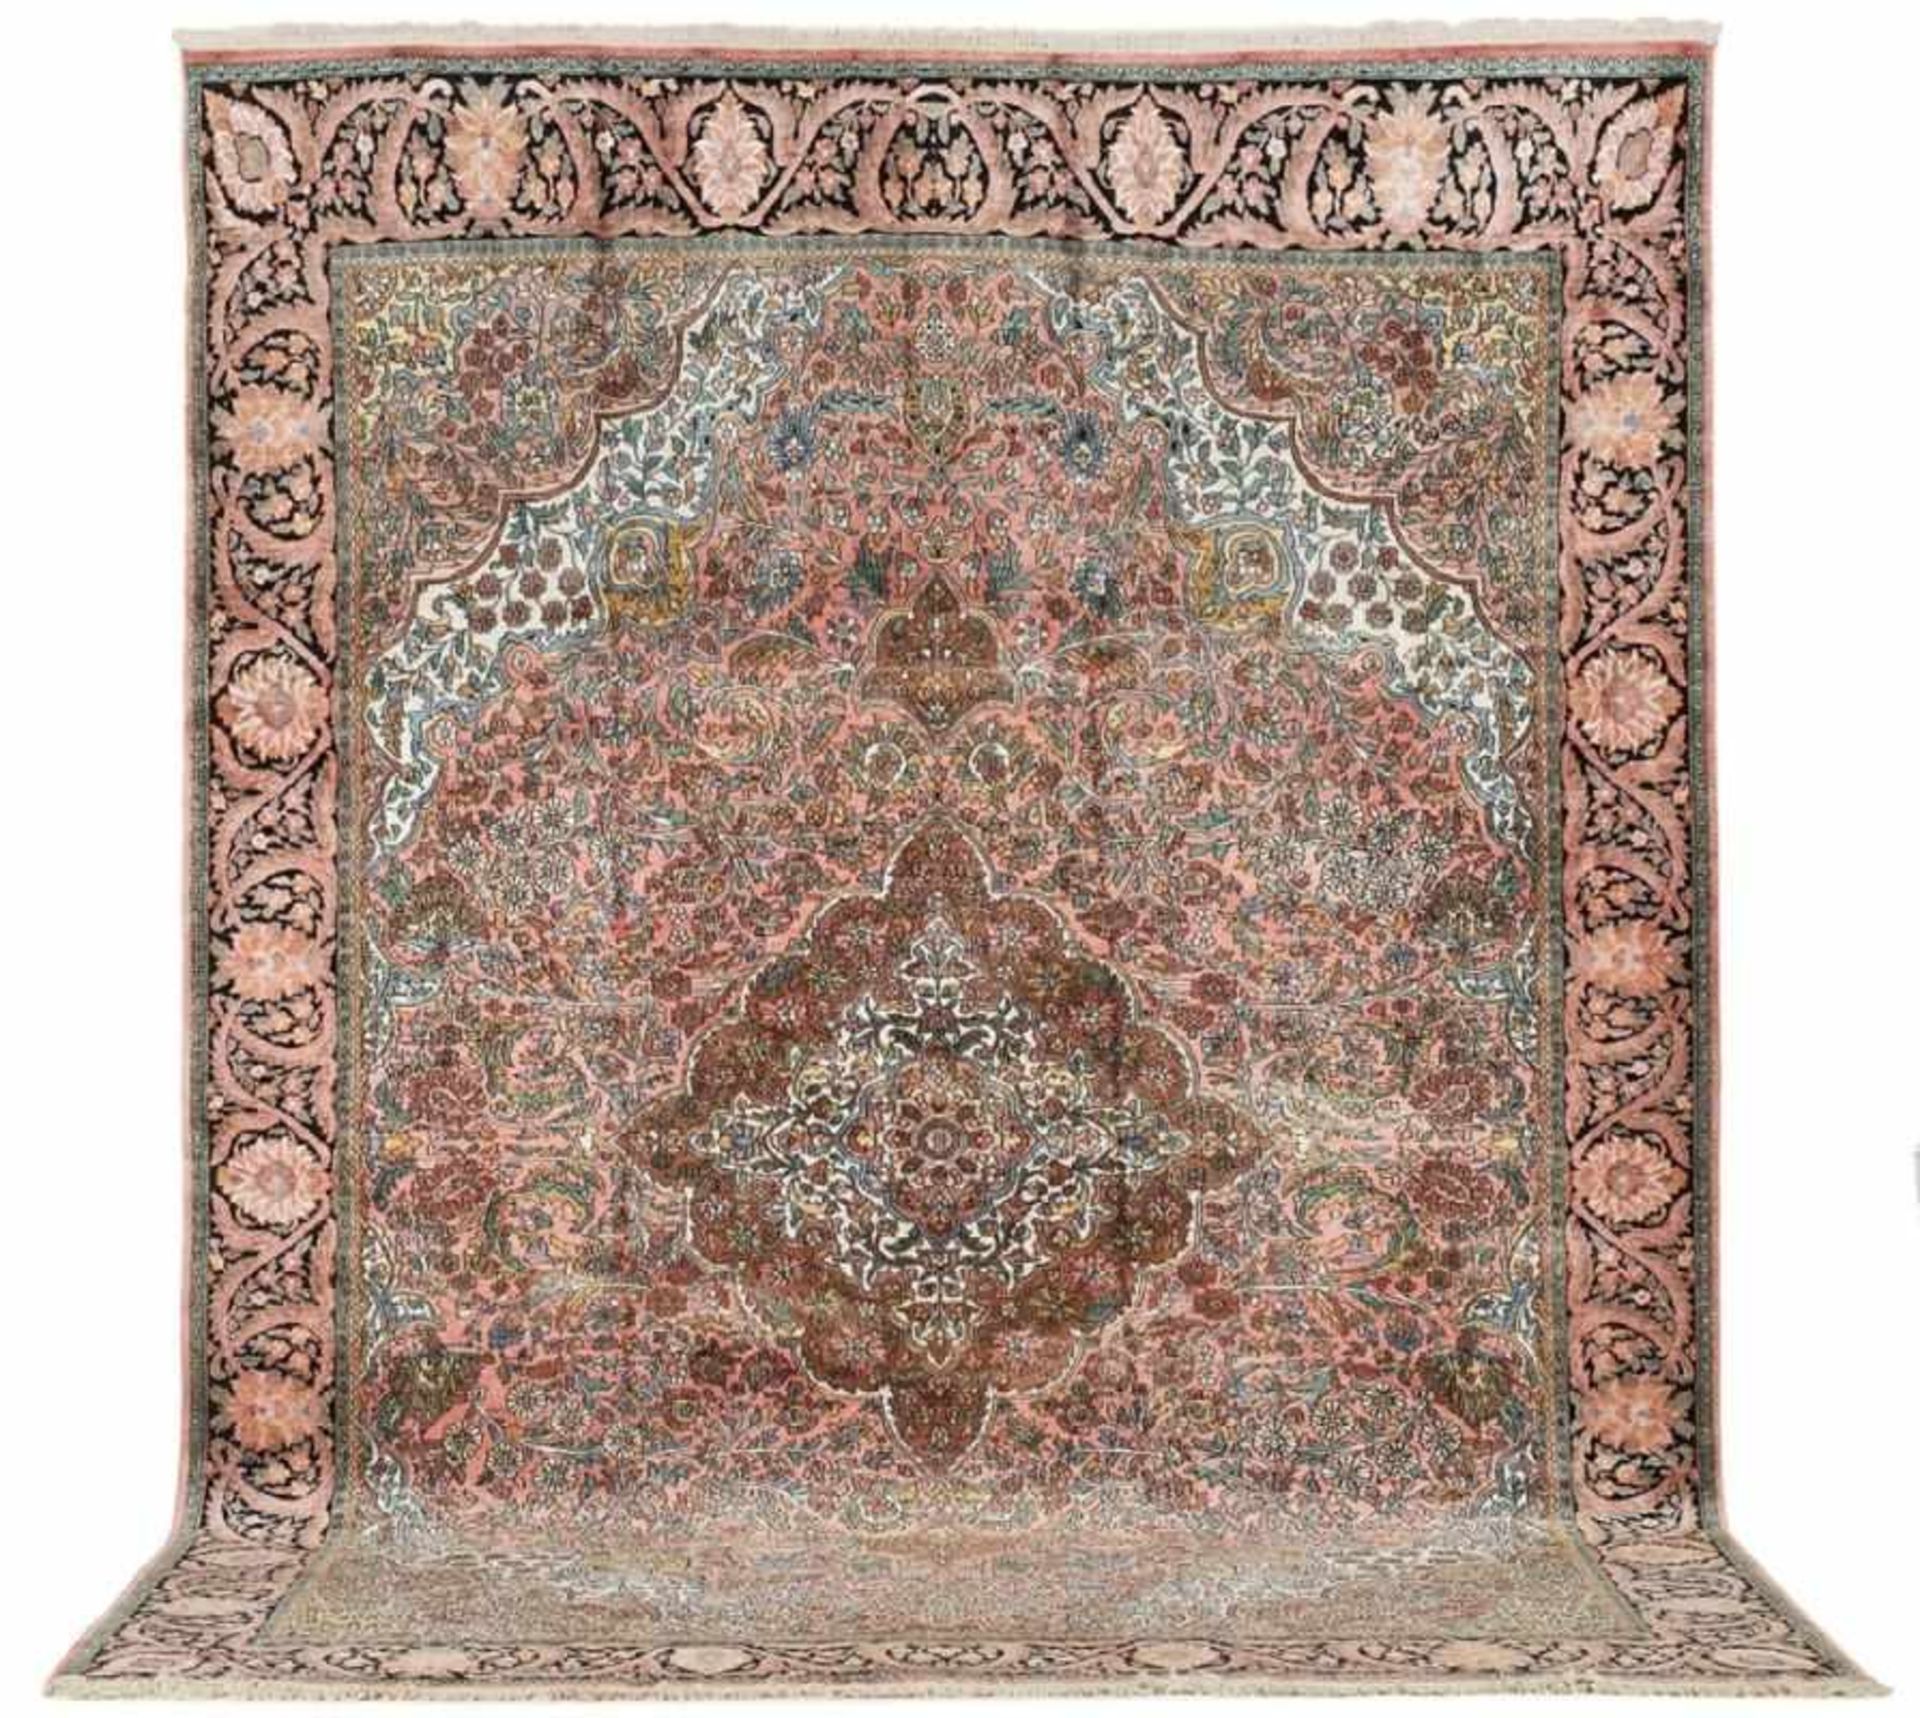 Saruk-Teppich, 2. Hälfte 20. Jh.Wolle auf Baumwolle. Roséfarbener Fond, 3- fach unterteiltes